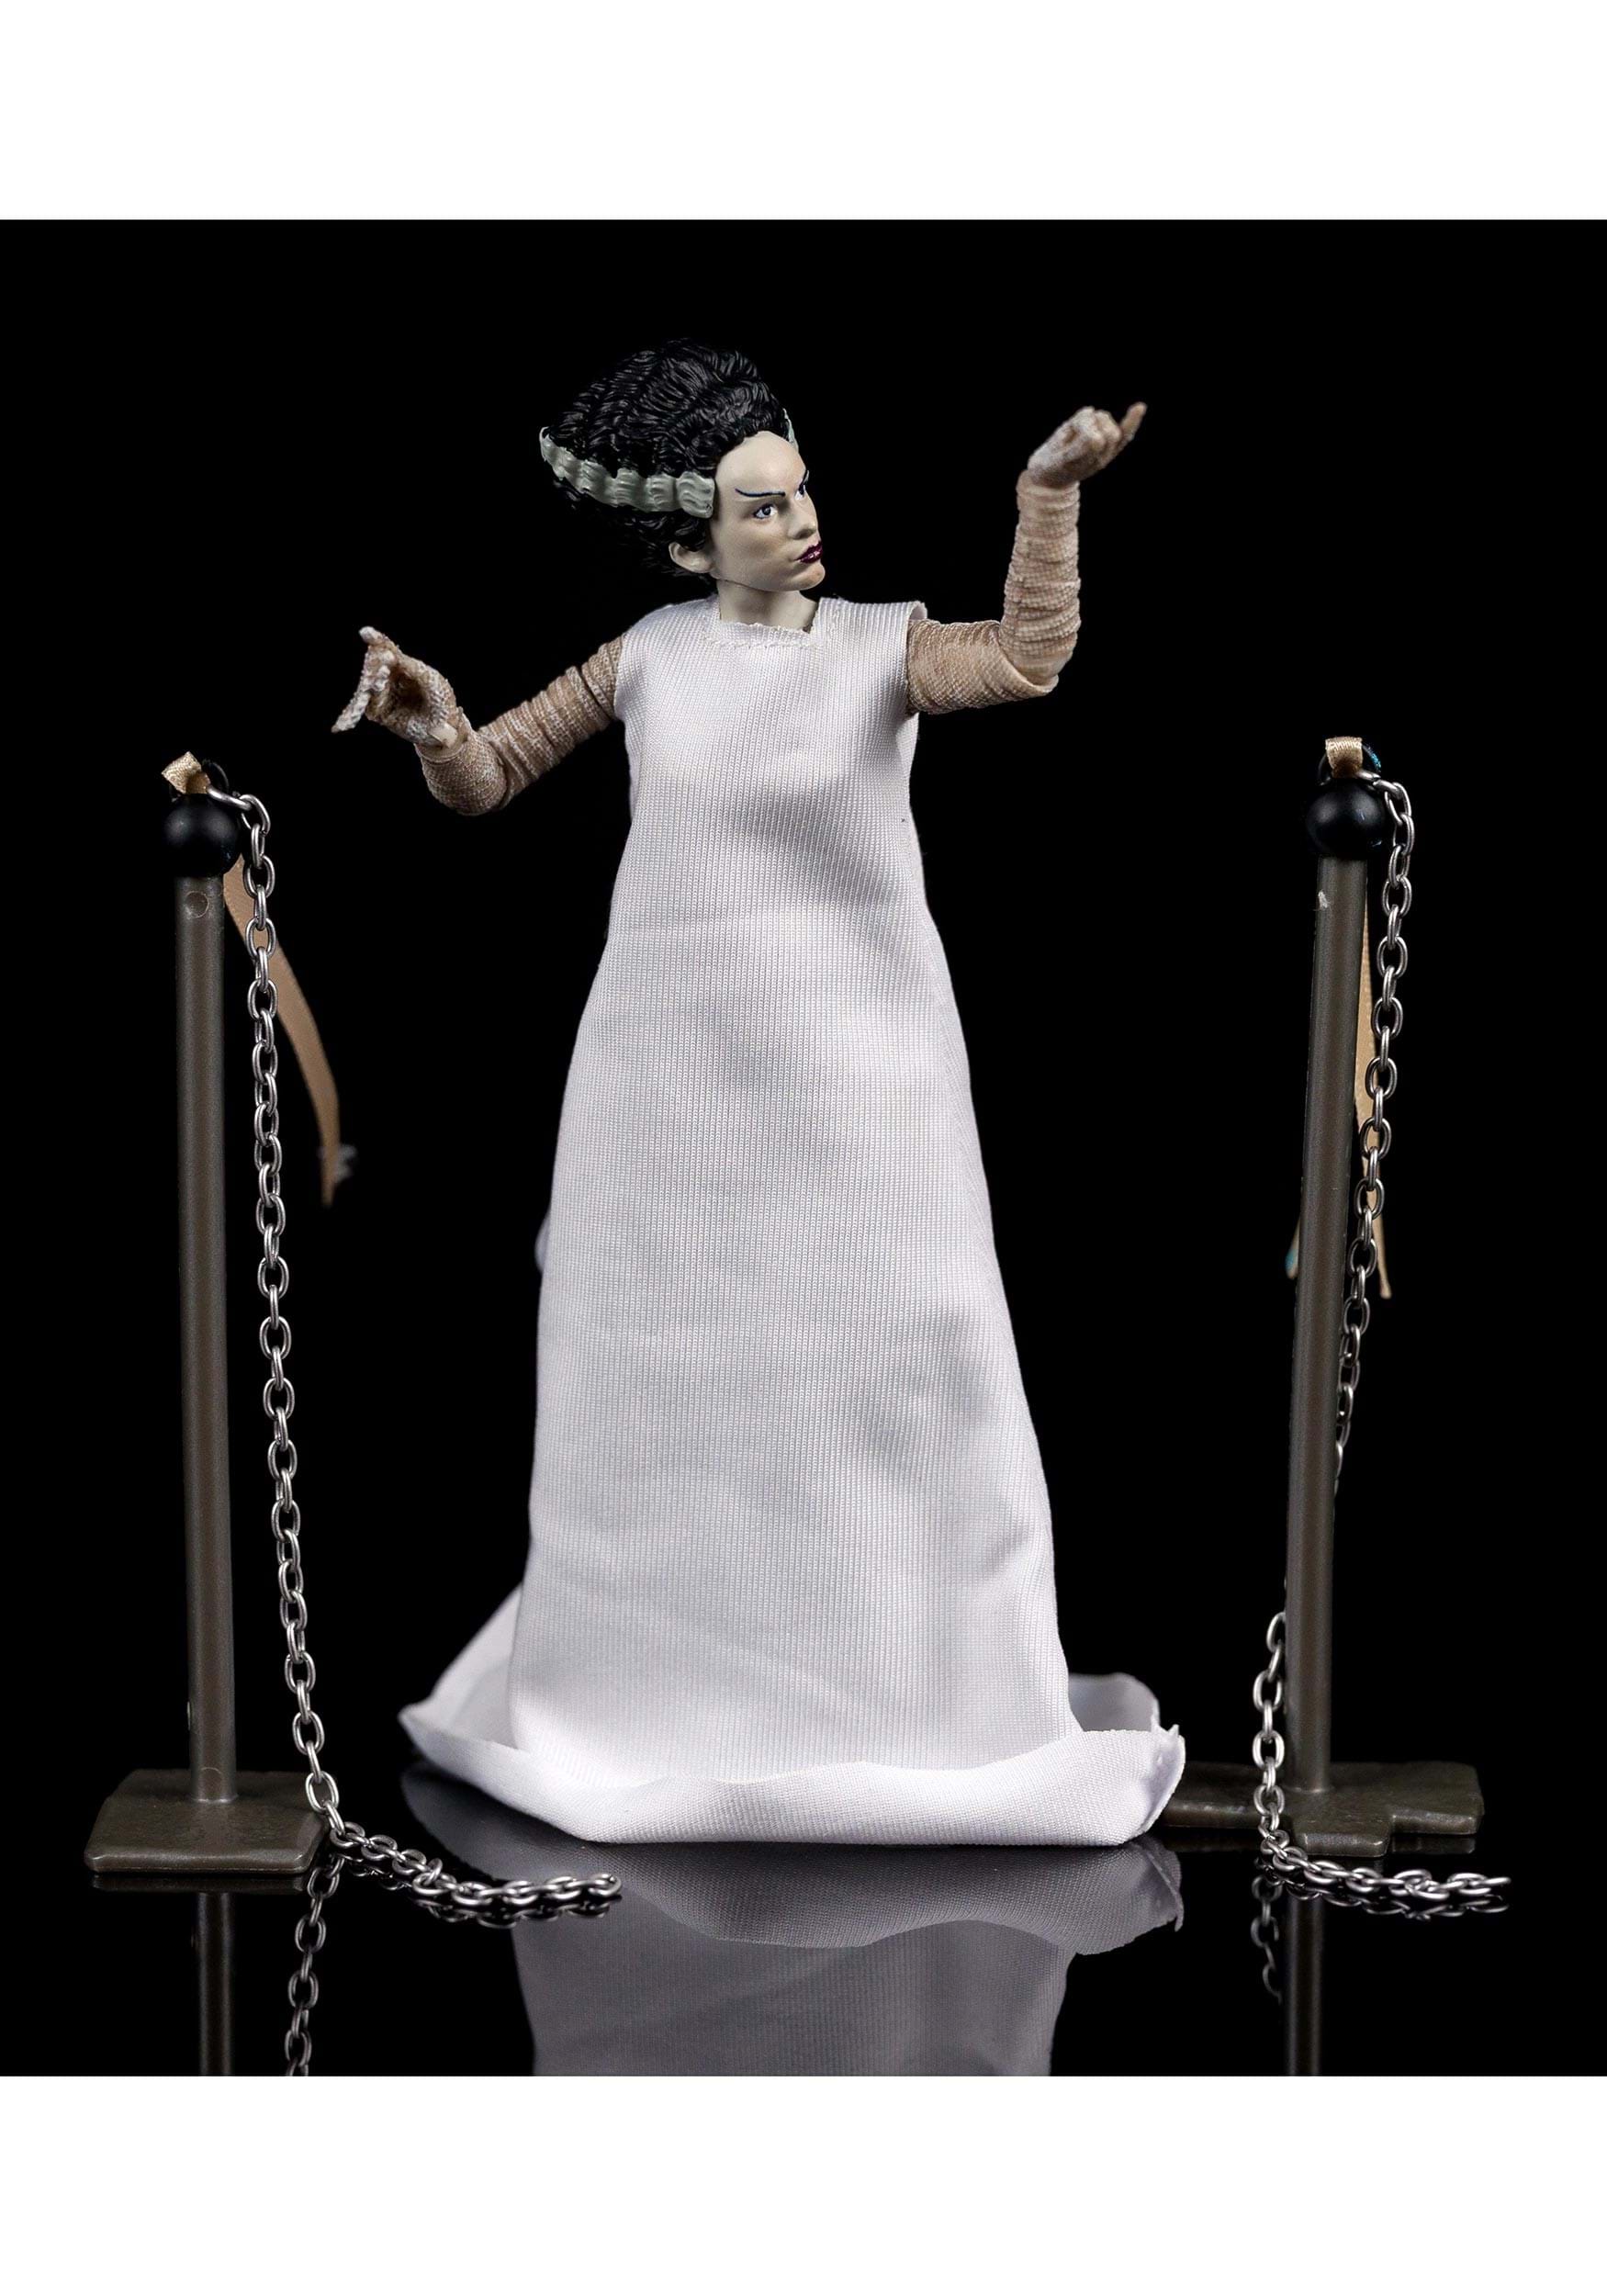 6-Inch Universal Monsters Bride Of Frankenstein Action Figure